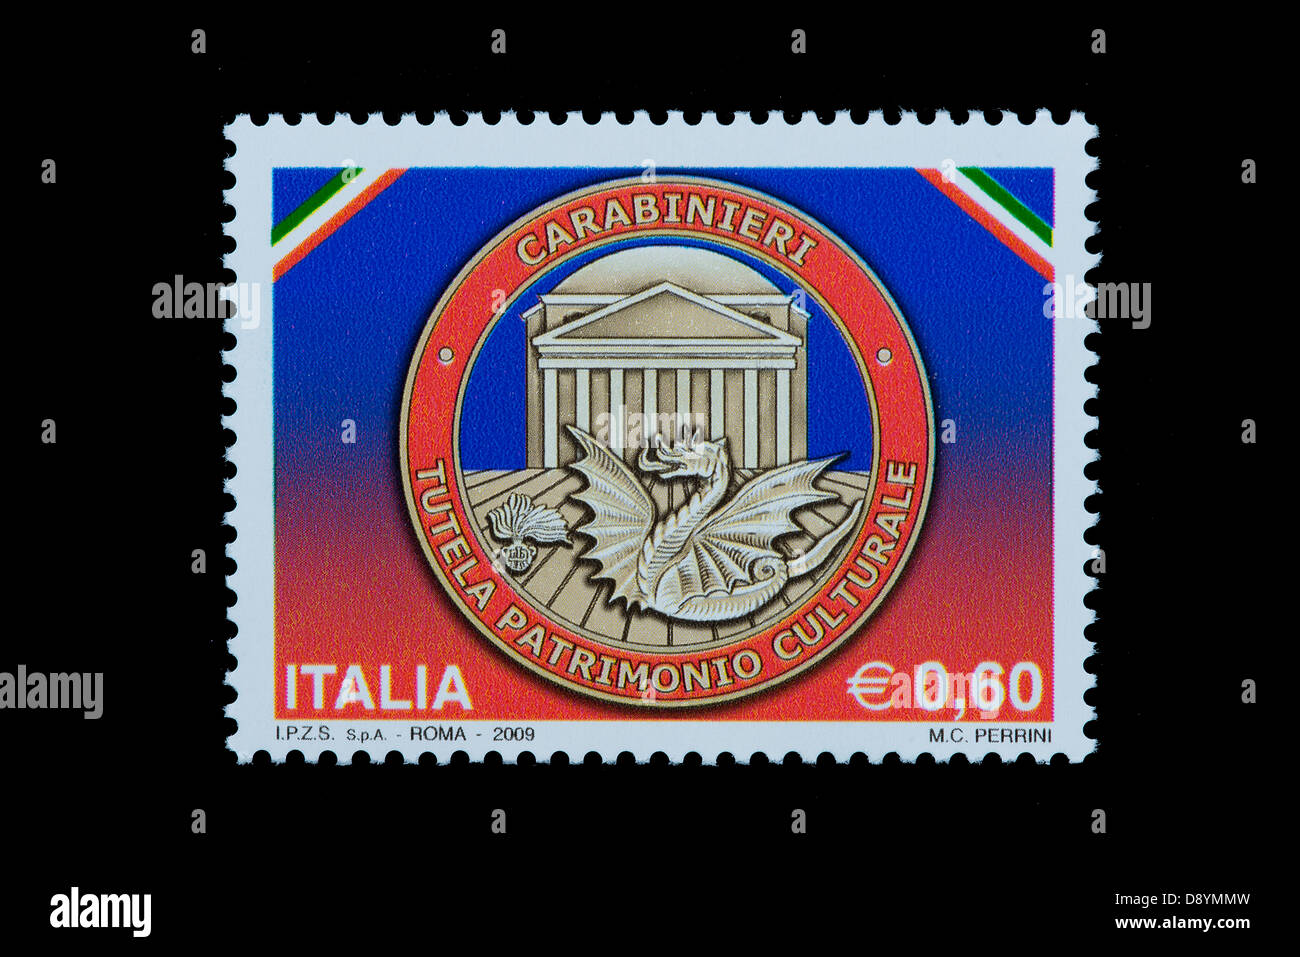 eine italienische Stempel feiert den Abschnitt der Vormundschaft des kulturellen Erbes der italienischen Carabinieri Stockfoto